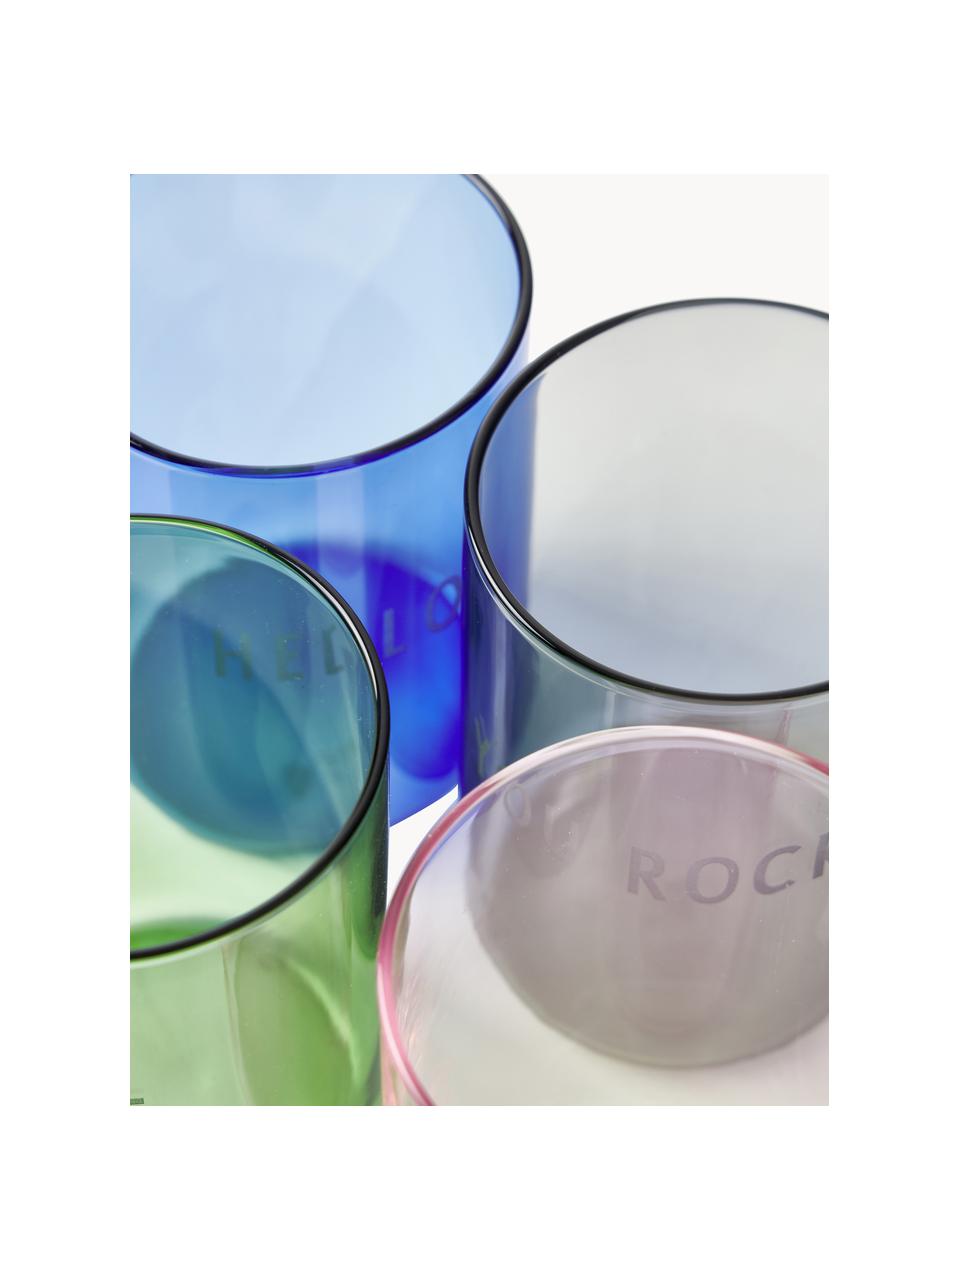 Designer waterglas Favourite YOU ROCK met opschrift, Borosilicaatglas, Zwart (You rock), Ø 8 x H 11 cm, 350 ml